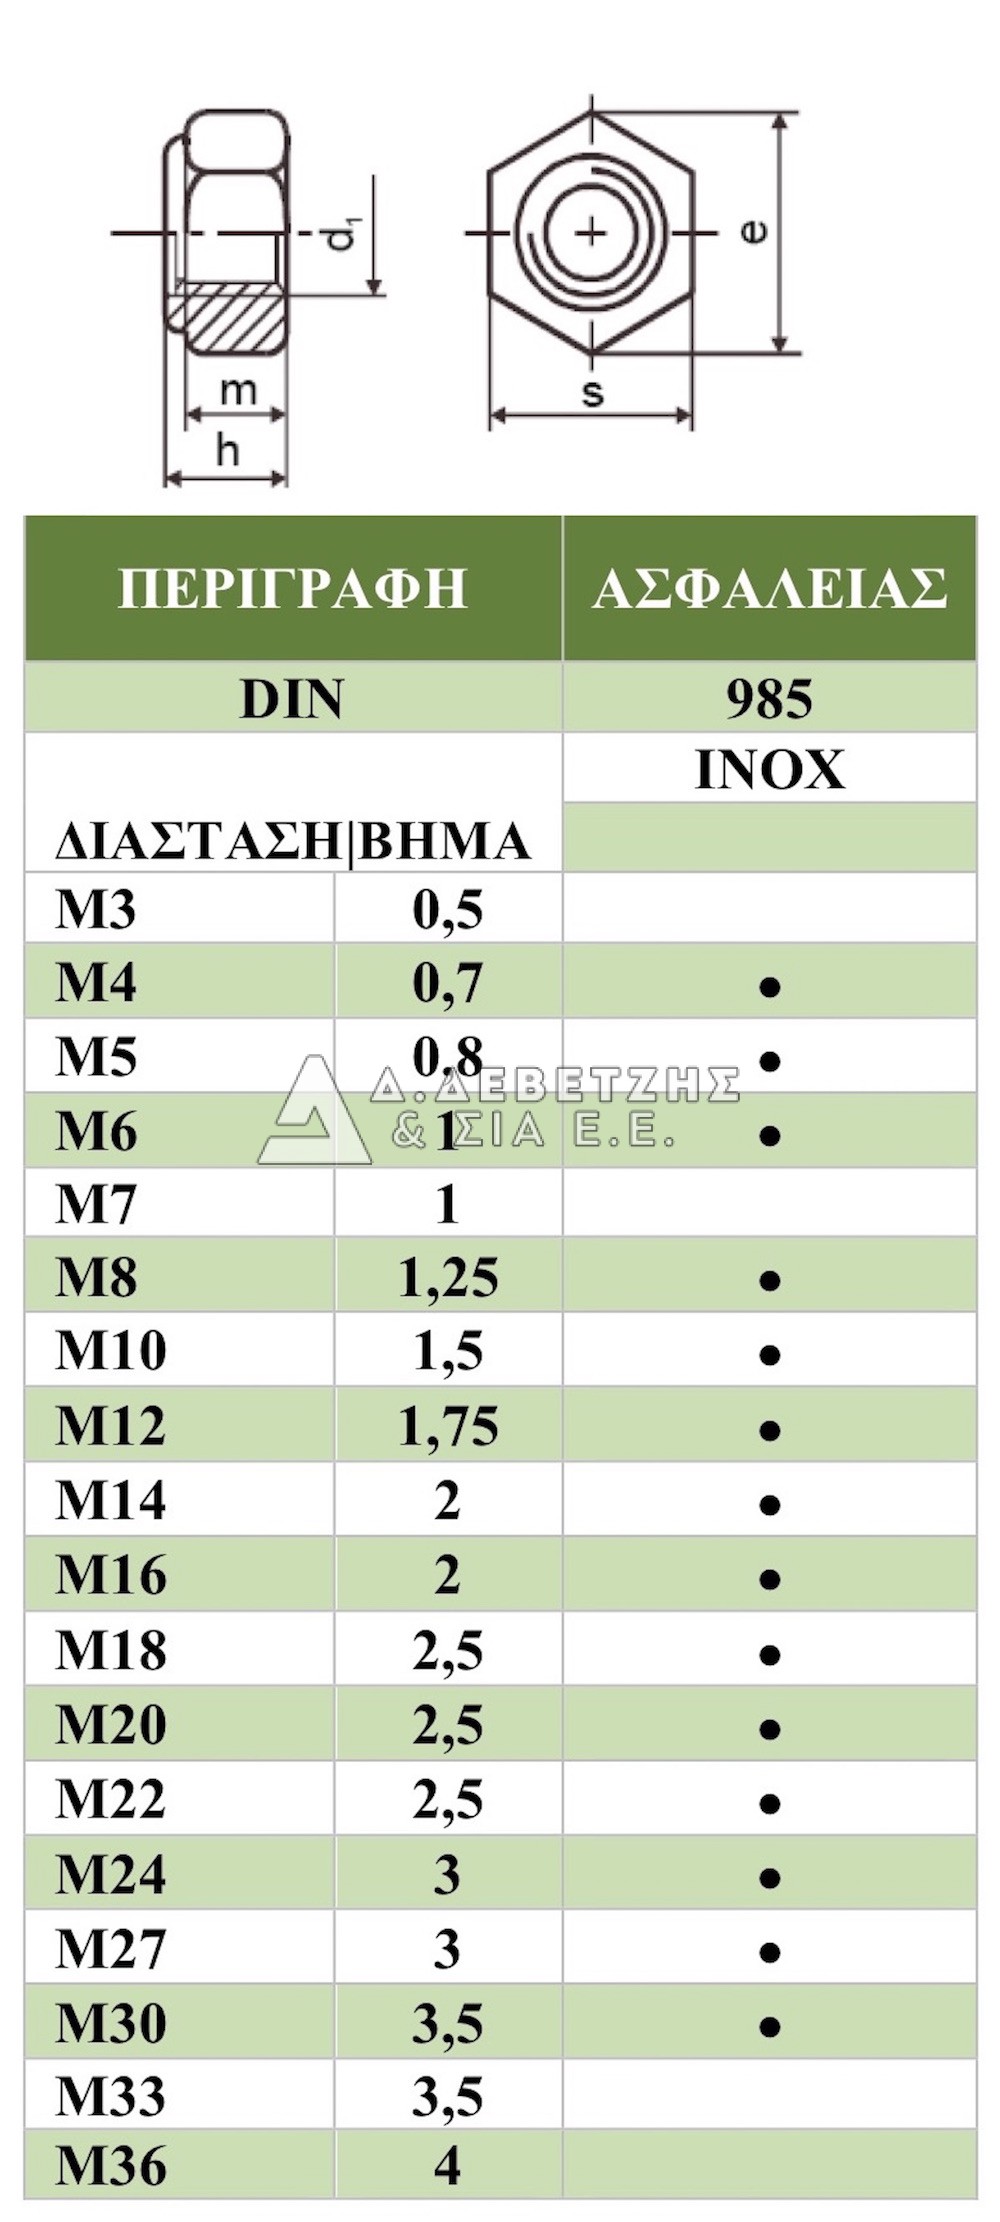 Hex Nuts DIN 985 m20 a2 VA 1 per unit 